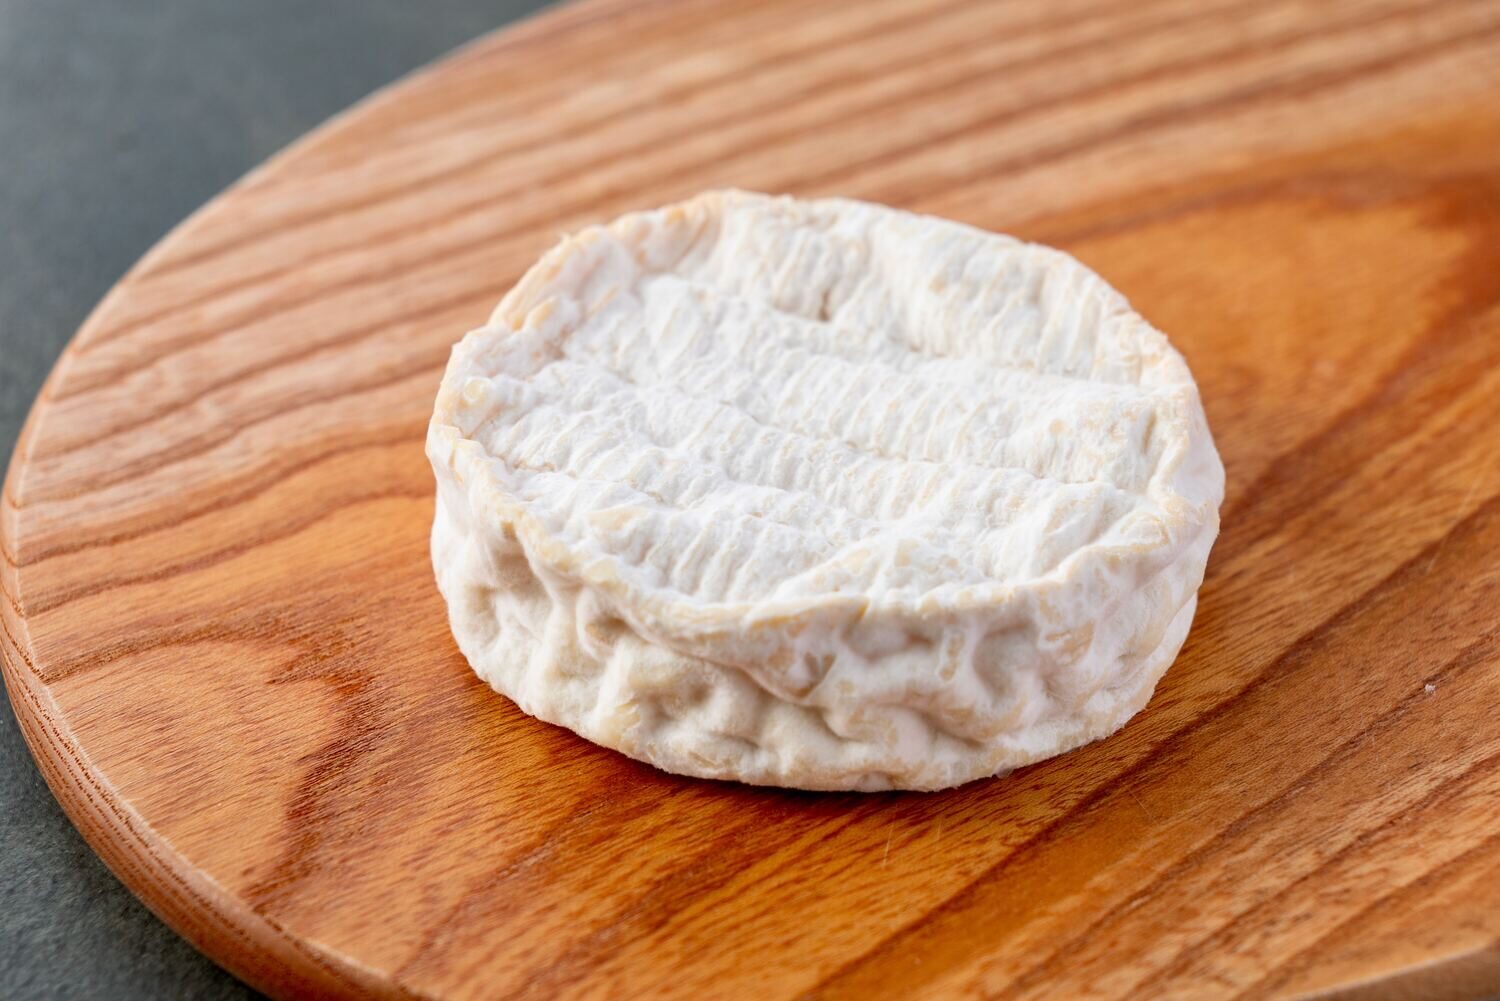 のぼりべつ酪農館の白カビチーズ「アラルーシュ」